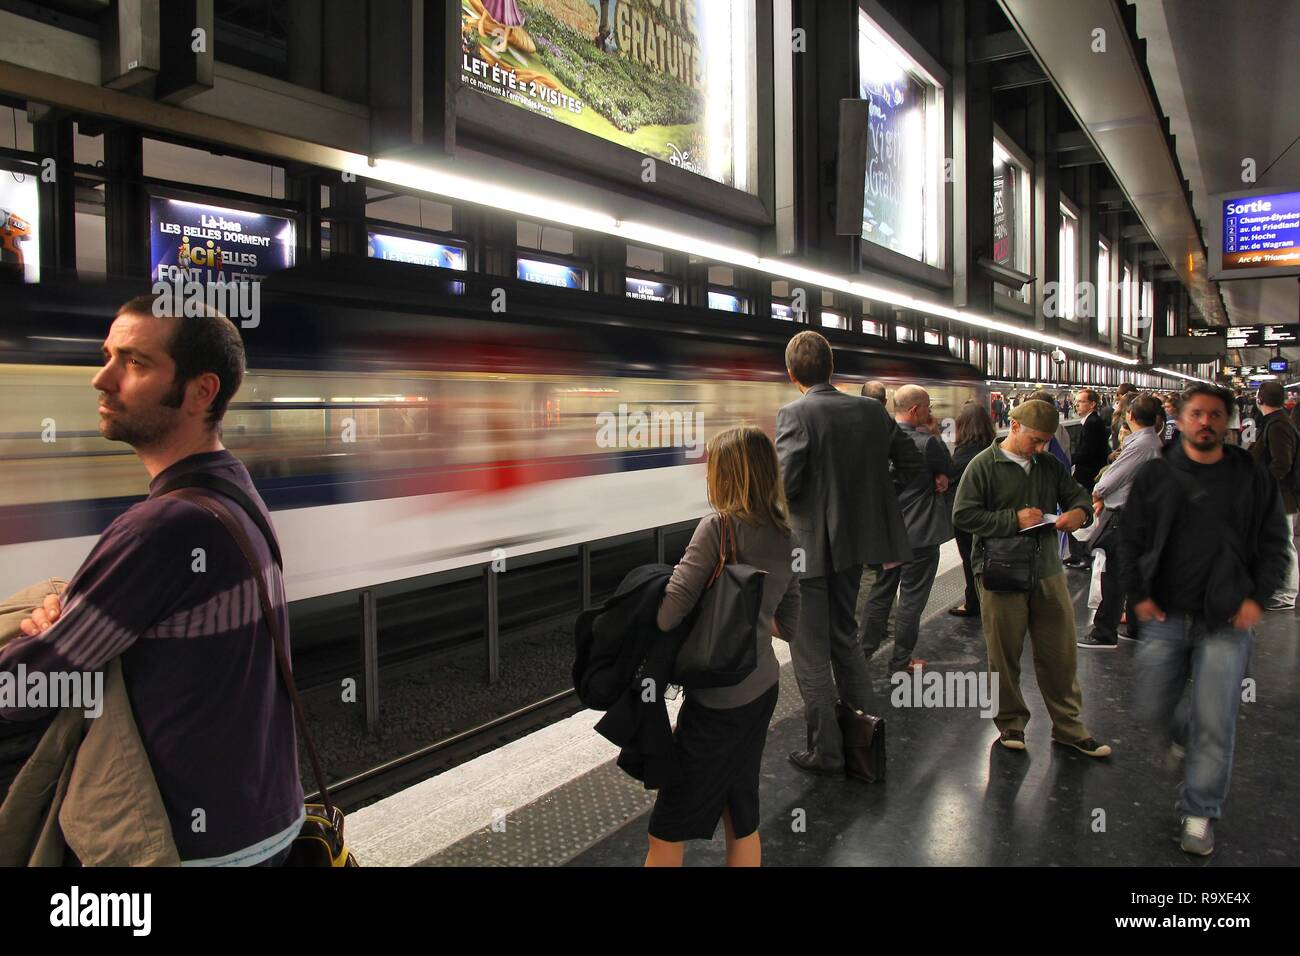 PARIS - le 20 juillet : Les gens attendent à la station de métro de Paris le 20 juillet 2011 à Paris, France. Métro de Paris est le 2ème plus grand système de métro dans le monde entier en Banque D'Images